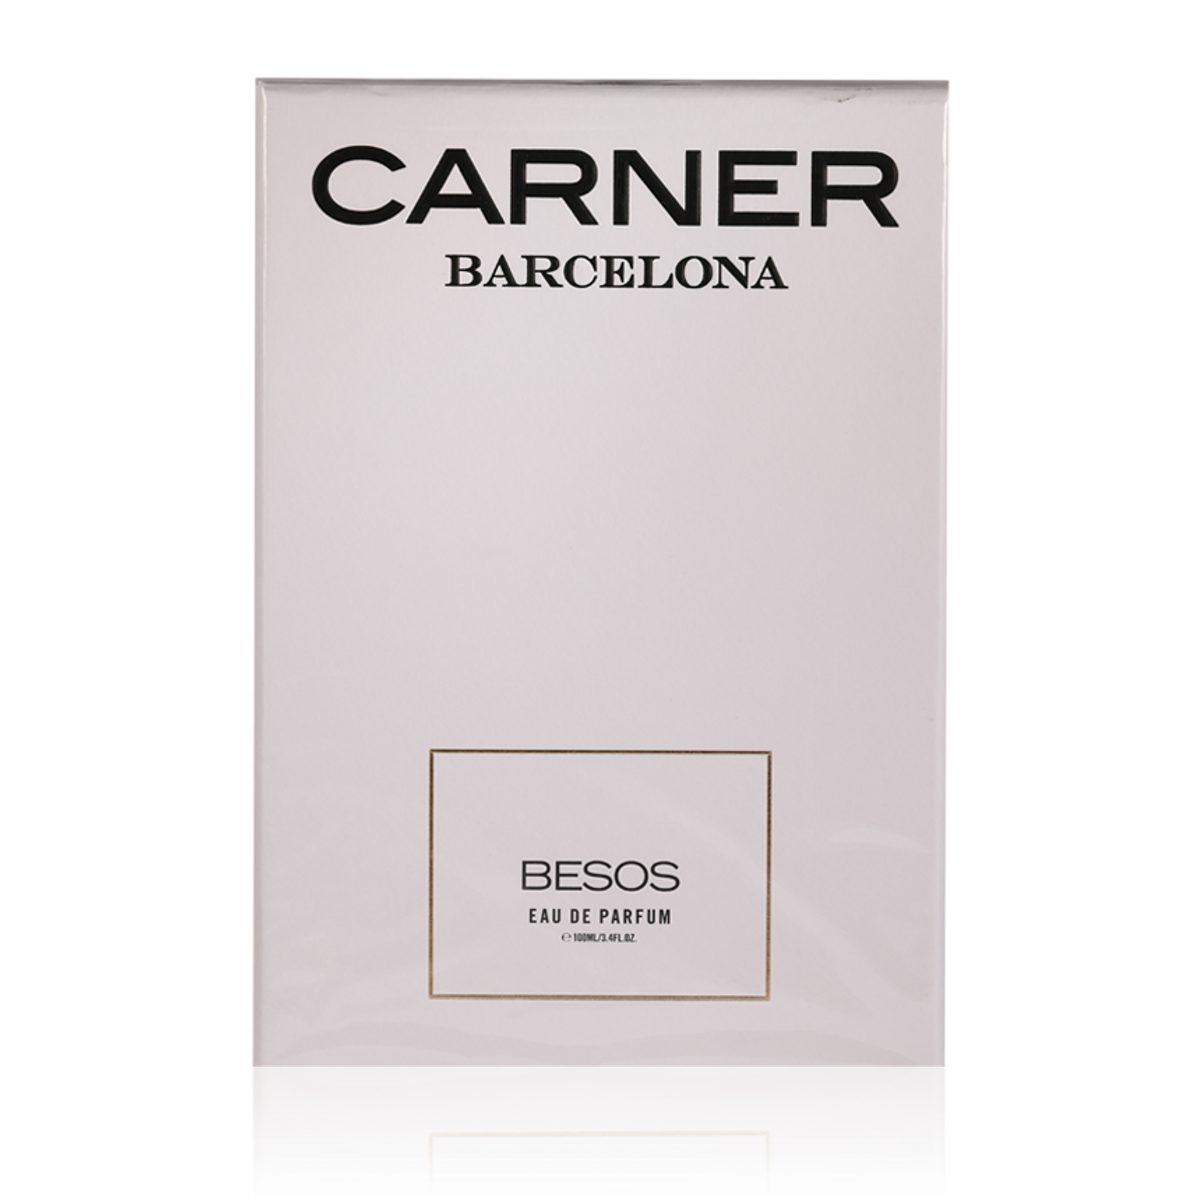 Parfum Barcelona de Eau Carner